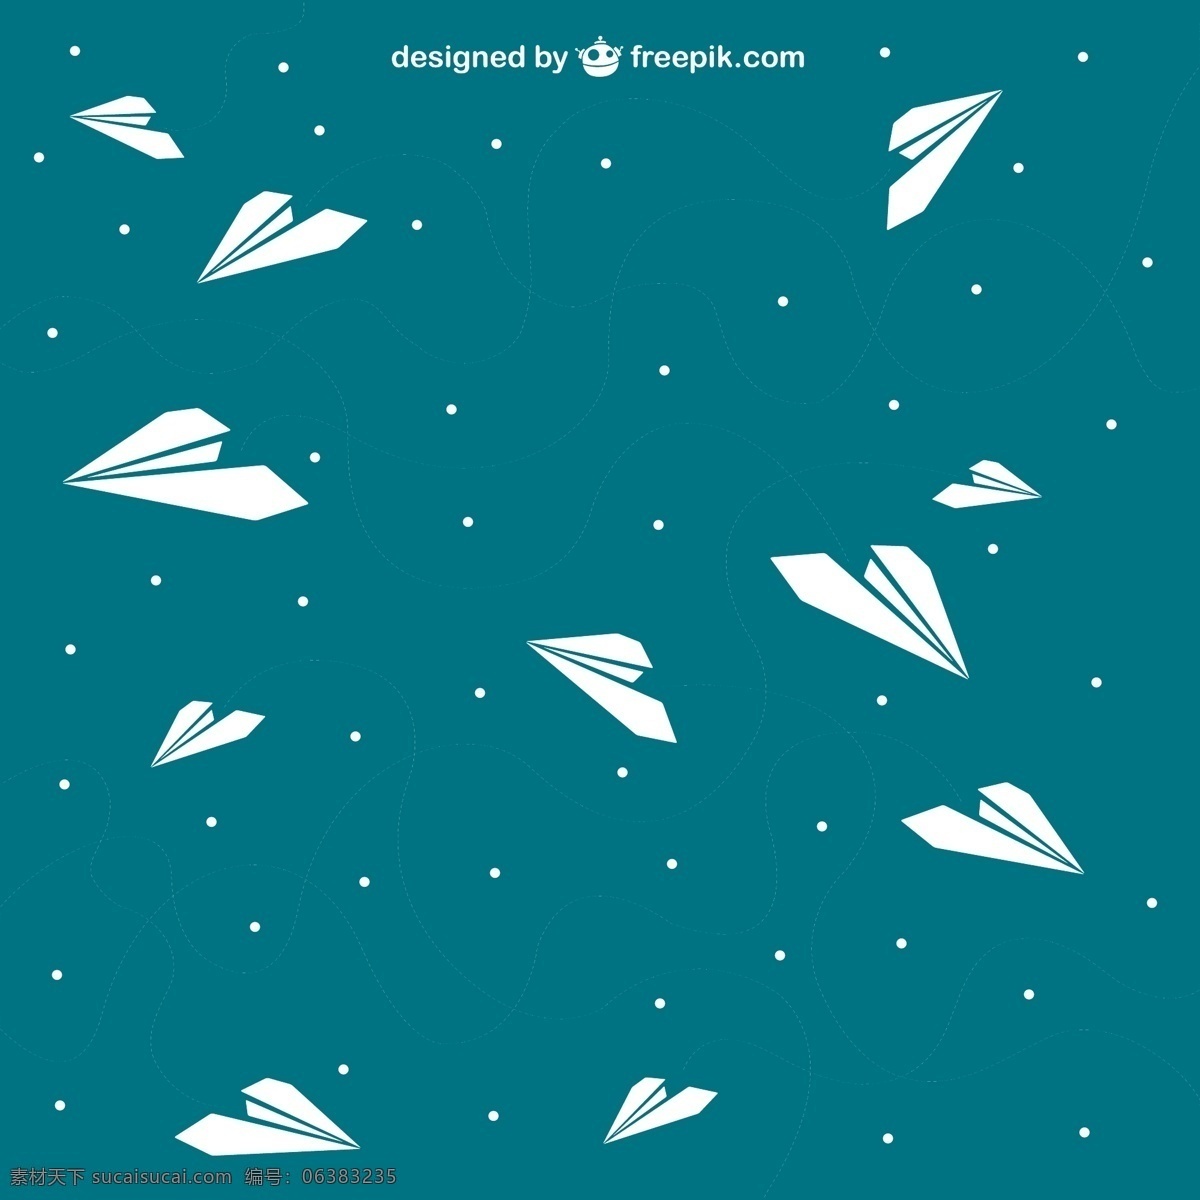 飞翔 纸 飞机 背景 矢量图 壁纸设计 蓝色背景 纸飞机 其他矢量图